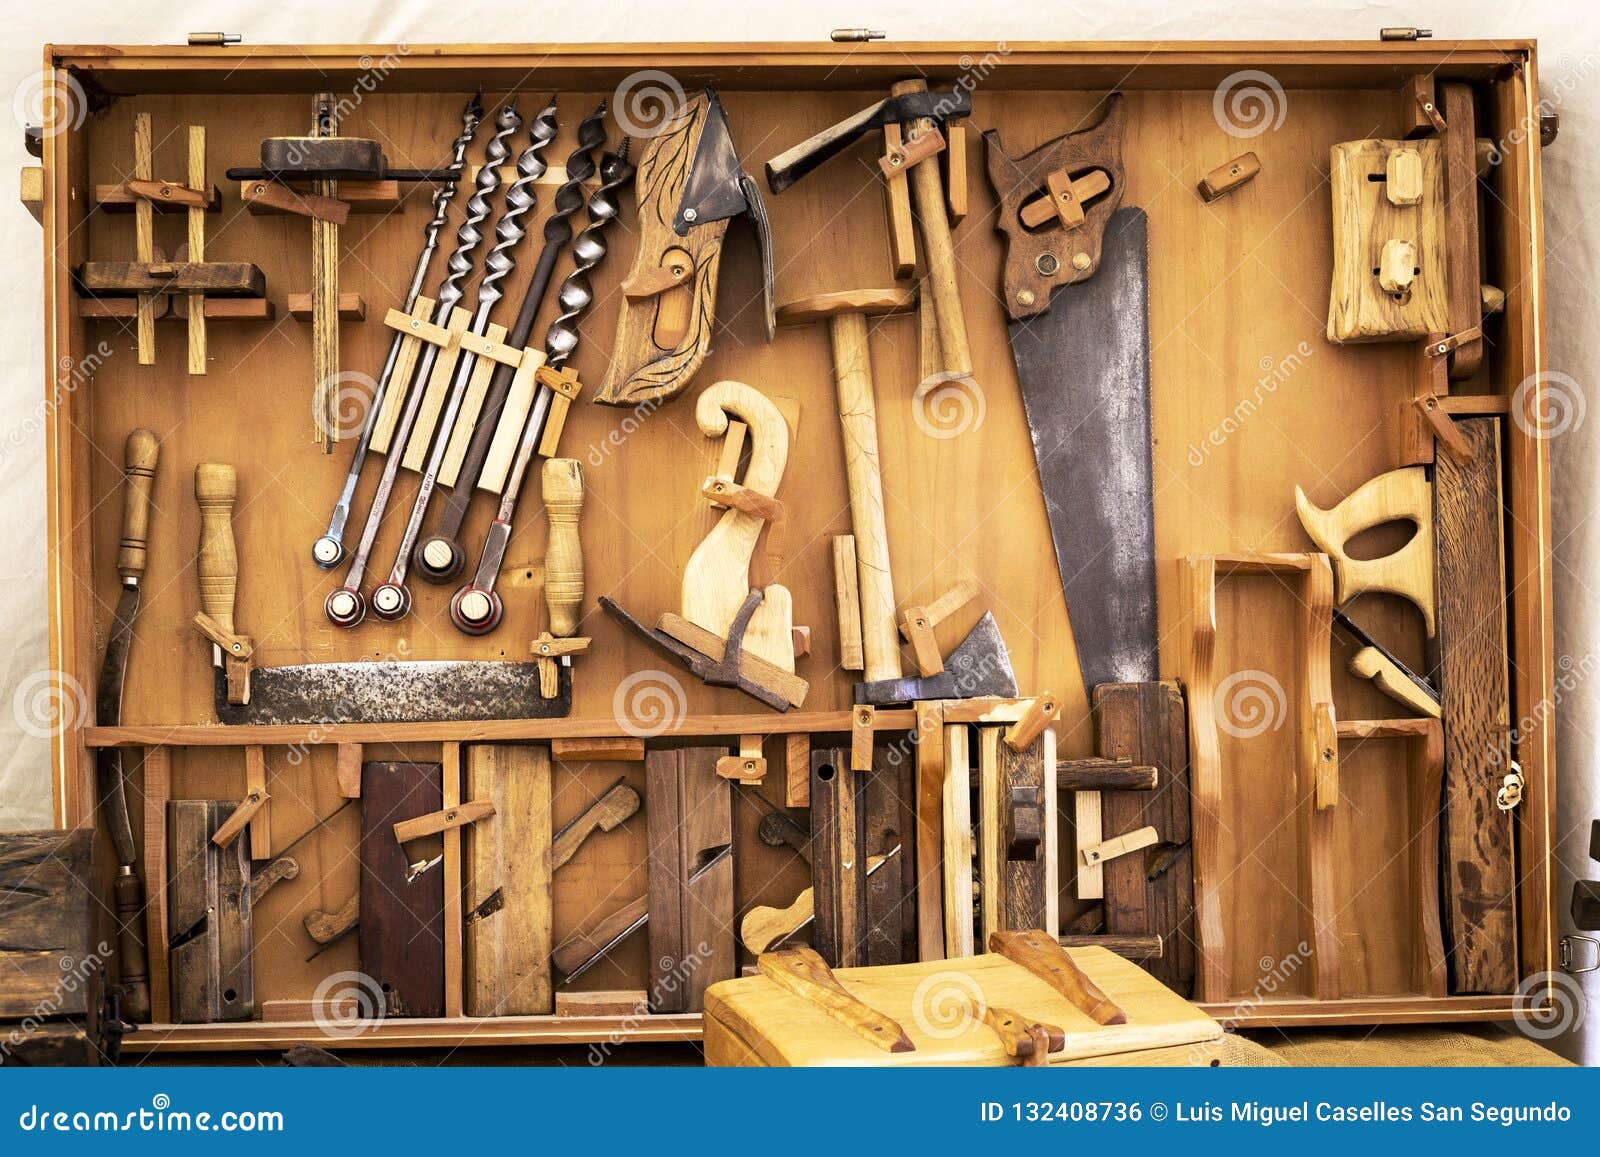 Красивее поняли инструмент столяр поставить. Старинные инструменты. Инструменты плотника. Столярный и Плотницкий инструмент. Старинный инструмент плотника.